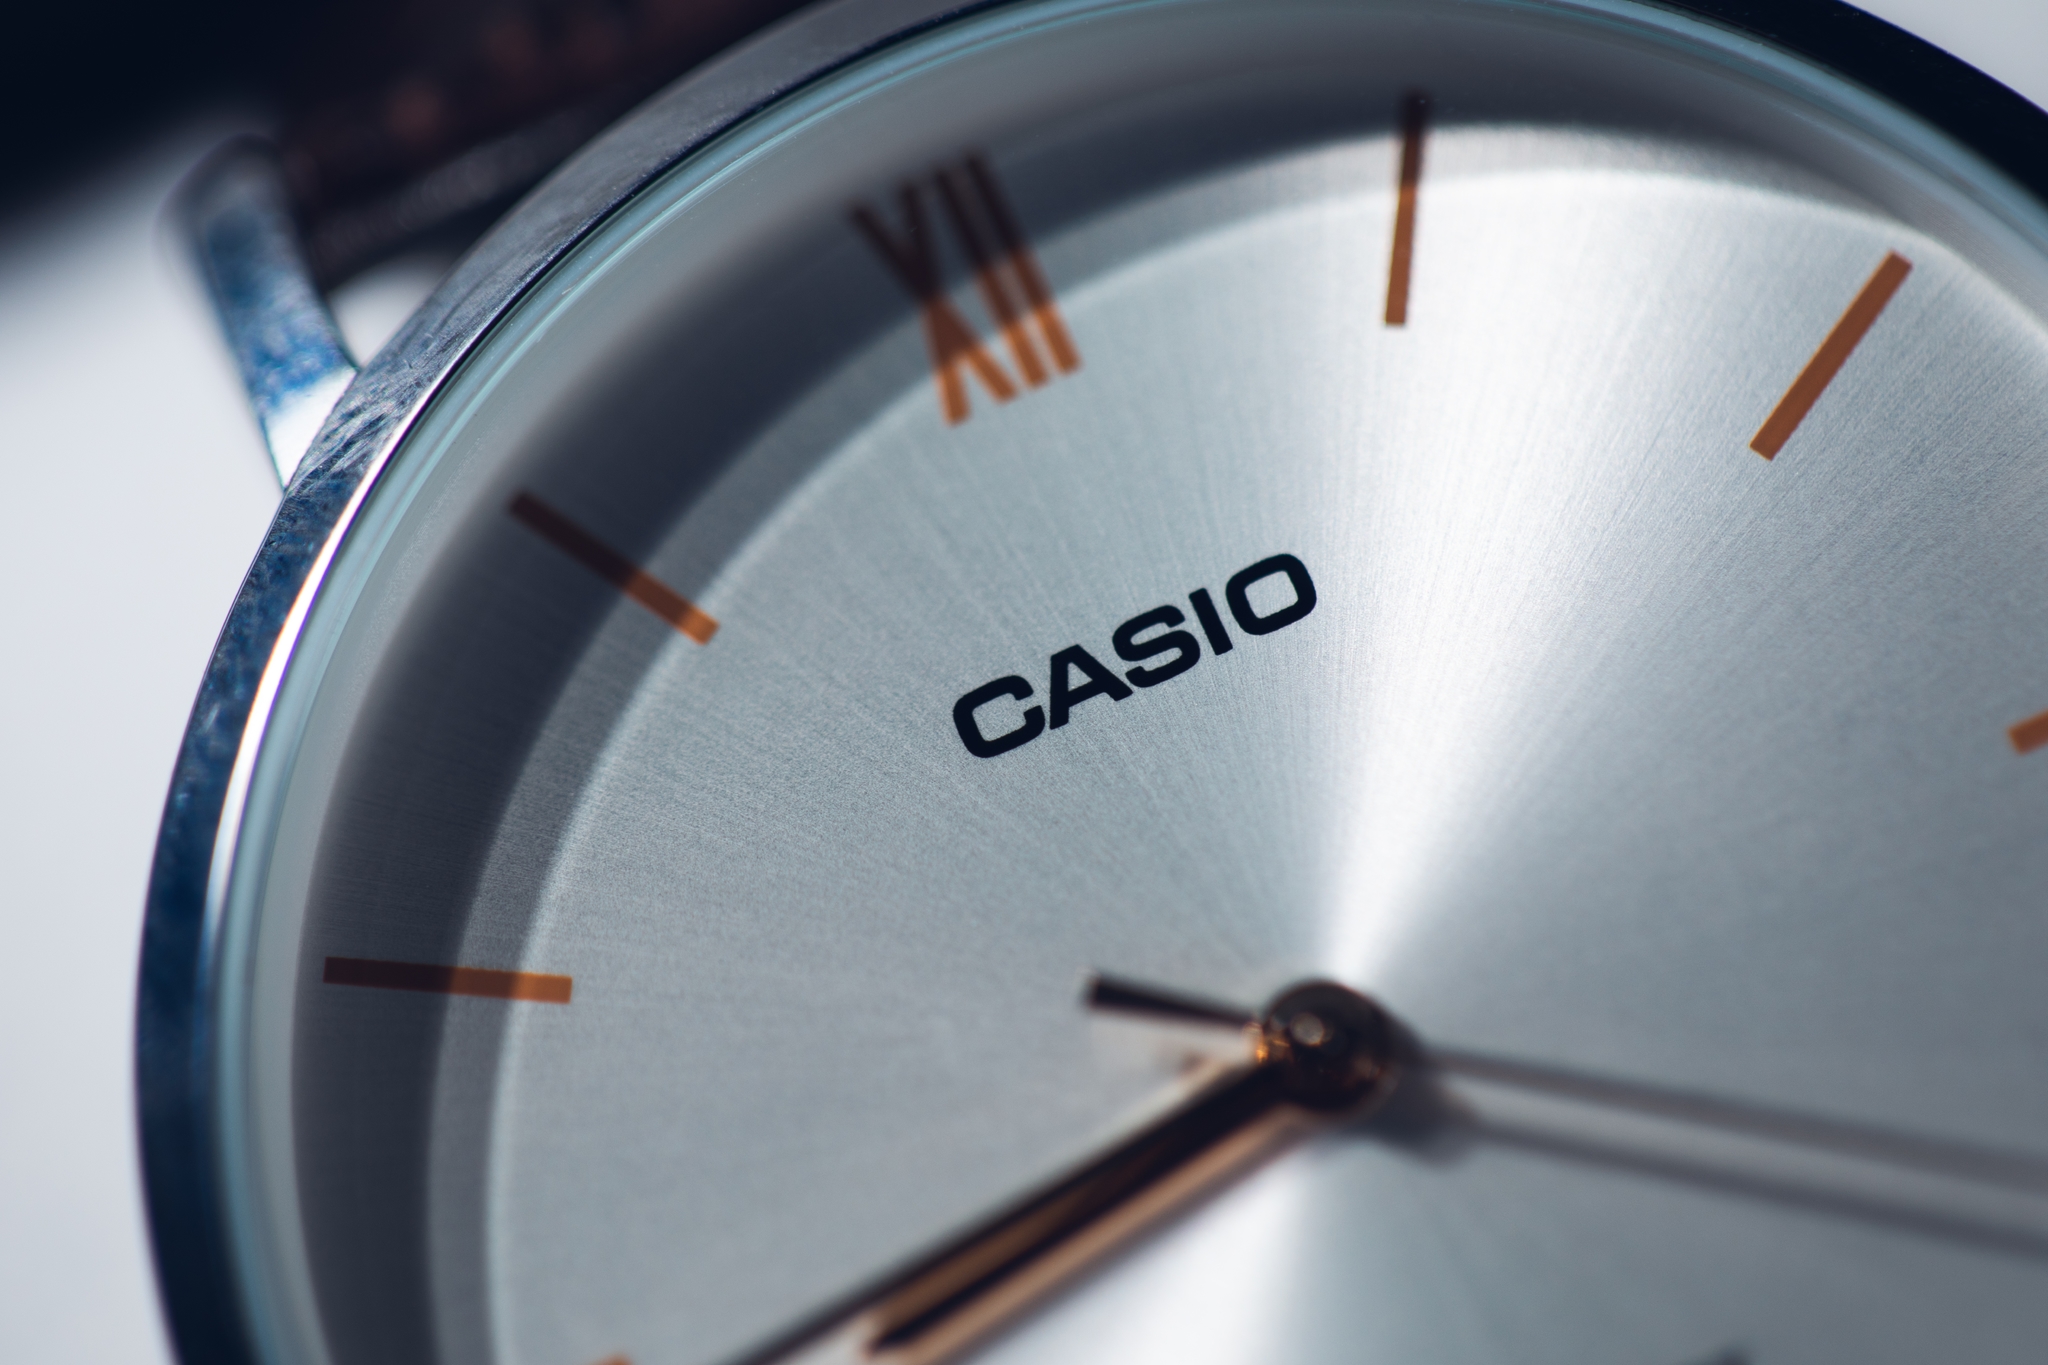 Hemos incluido un reloj Casio entre los mayores chollos y las mejores ofertas de esta semana en Amazon.